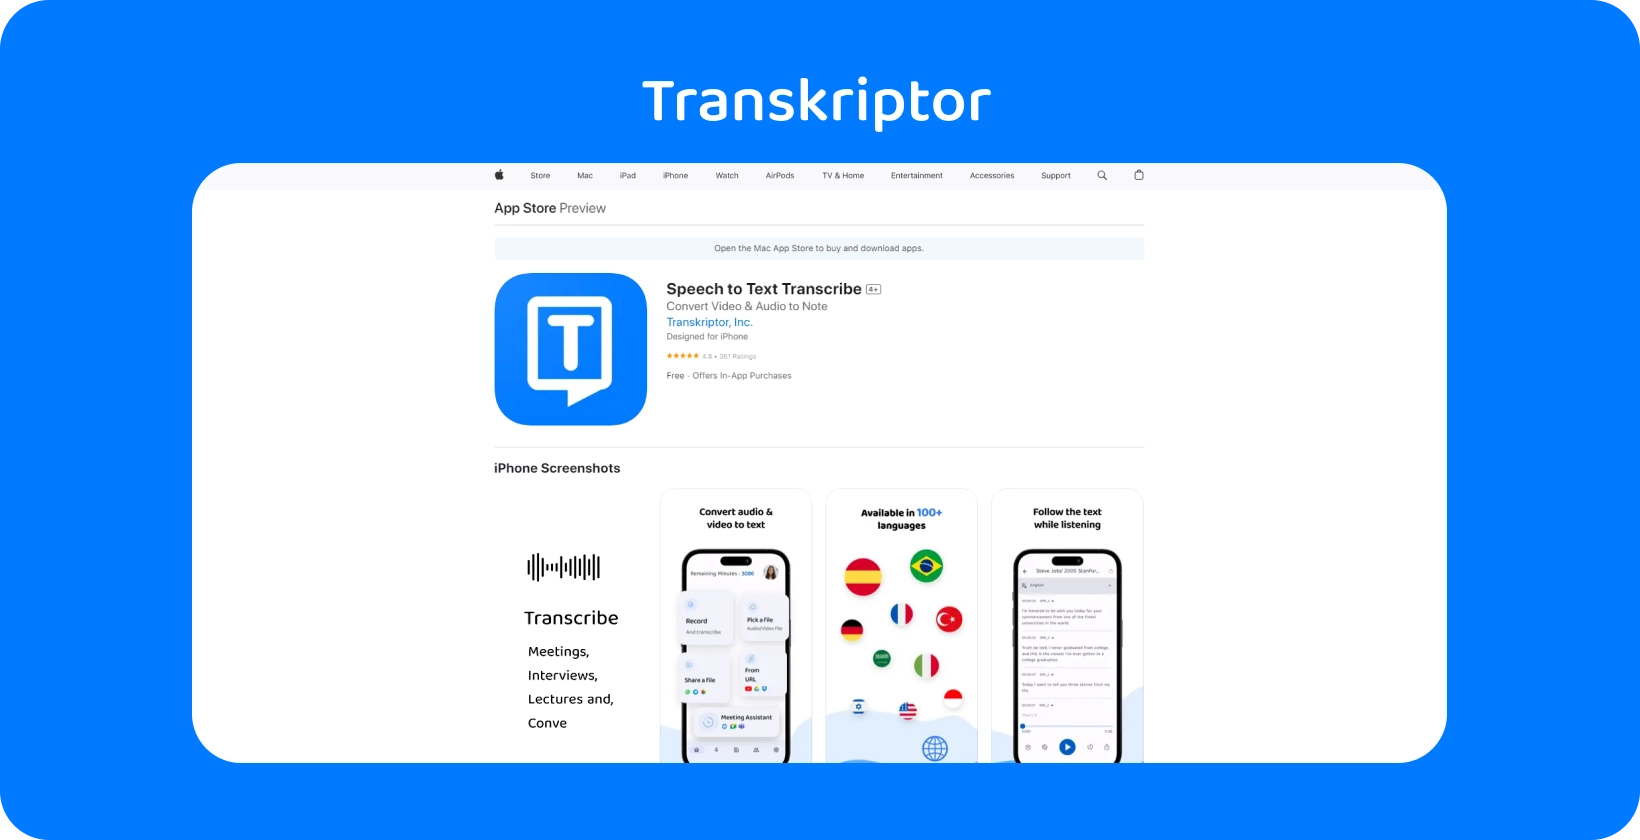 Transkriptor додаток був продемонстрований на iPhone, підкресливши свої можливості транскрипції мови в текст.